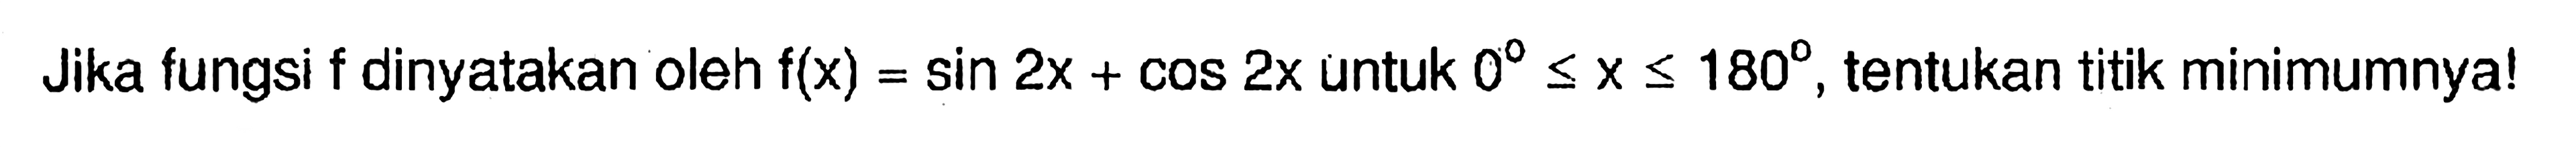 Jika fungsi f dinyatakan oleh f(x)=sin 2x + COS 2x untuk 0 <= X <= 180, tentukan titik minimumnyal